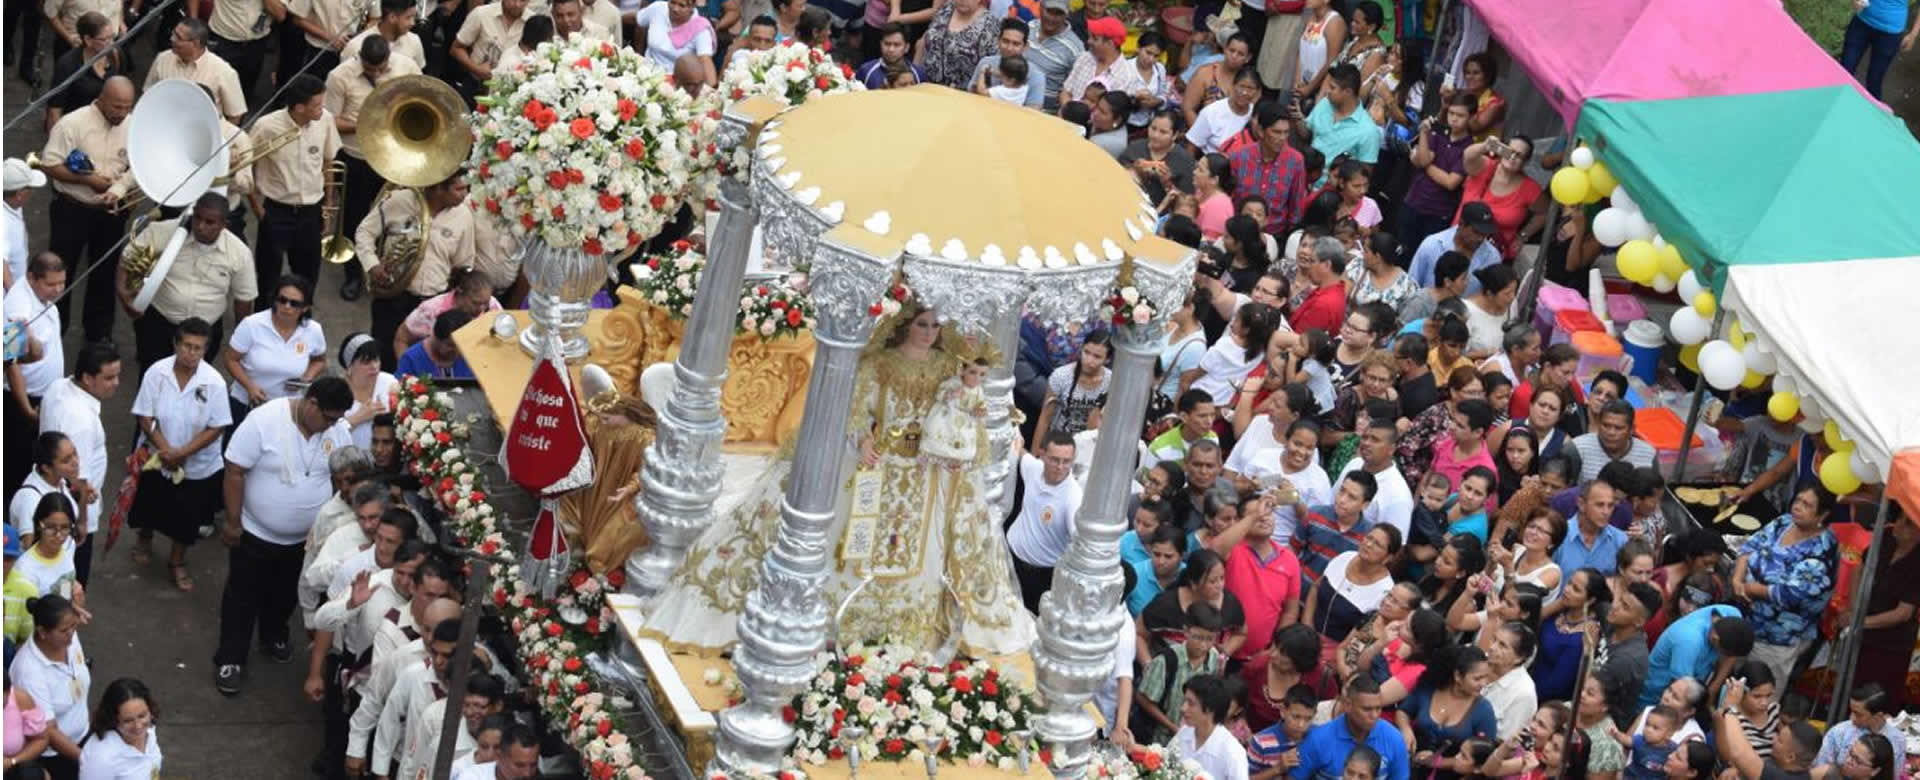 Feligreses de León celebra con júbilo 105 años de Nuestra Señora de La Merced